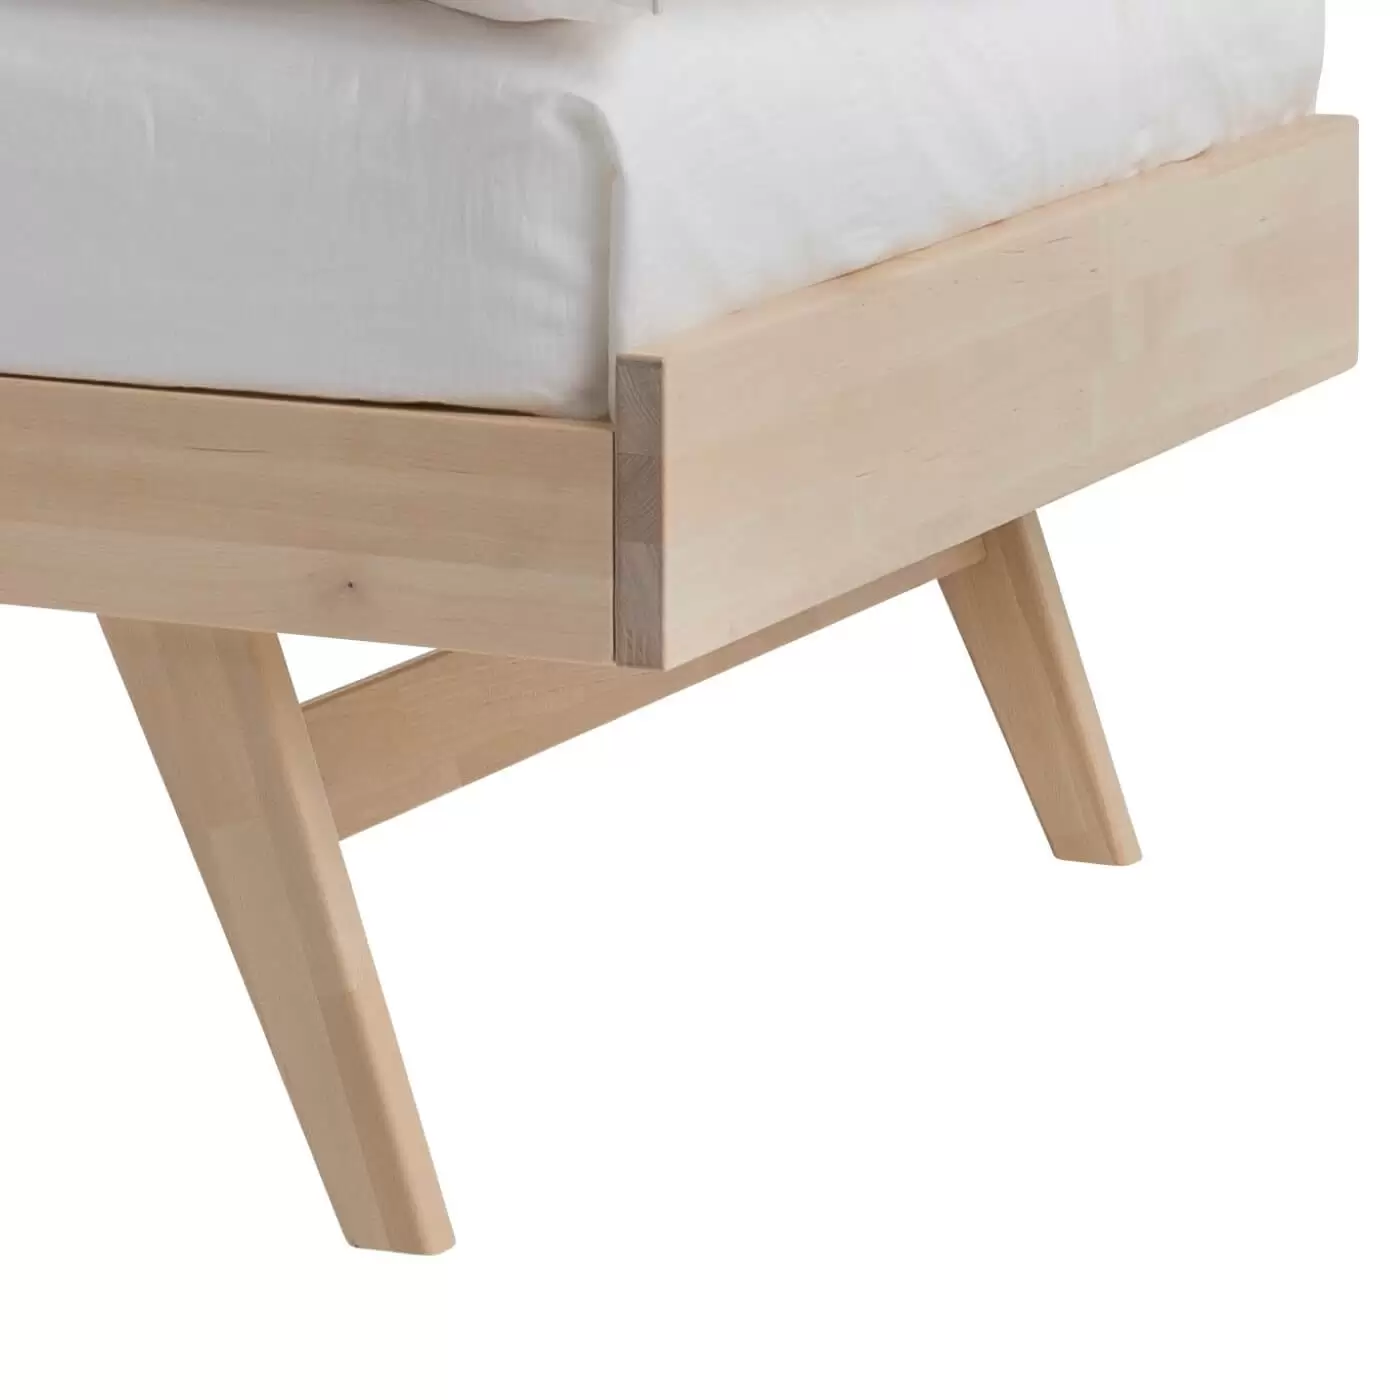 Łóżko na nóżkach NOTTE drewniane. Przybliżony widok na skośne wysokie nogi z drewna brzozy skandynawskiej. Nowoczesny design